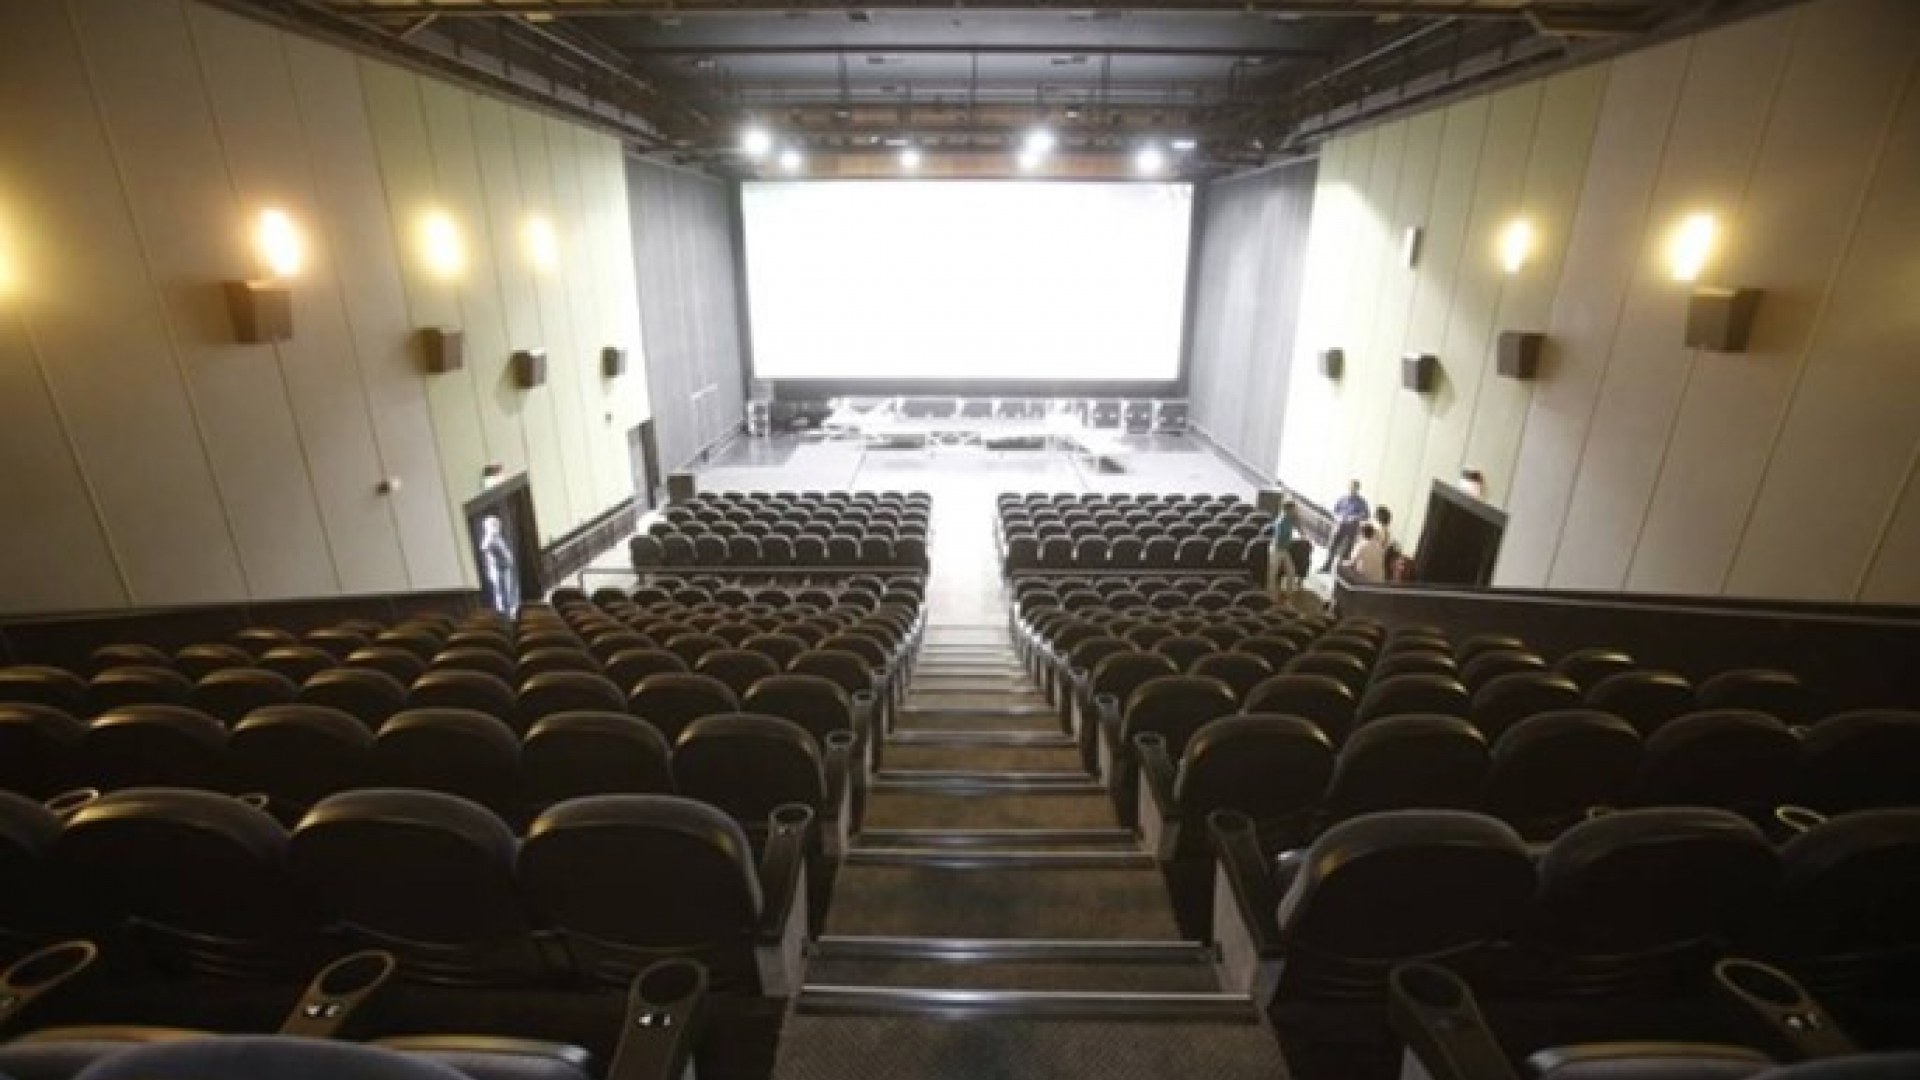 Centro de Artes UFF visto da plateia, com a imagem das fileiras de cadeiras e a tela ao fundo